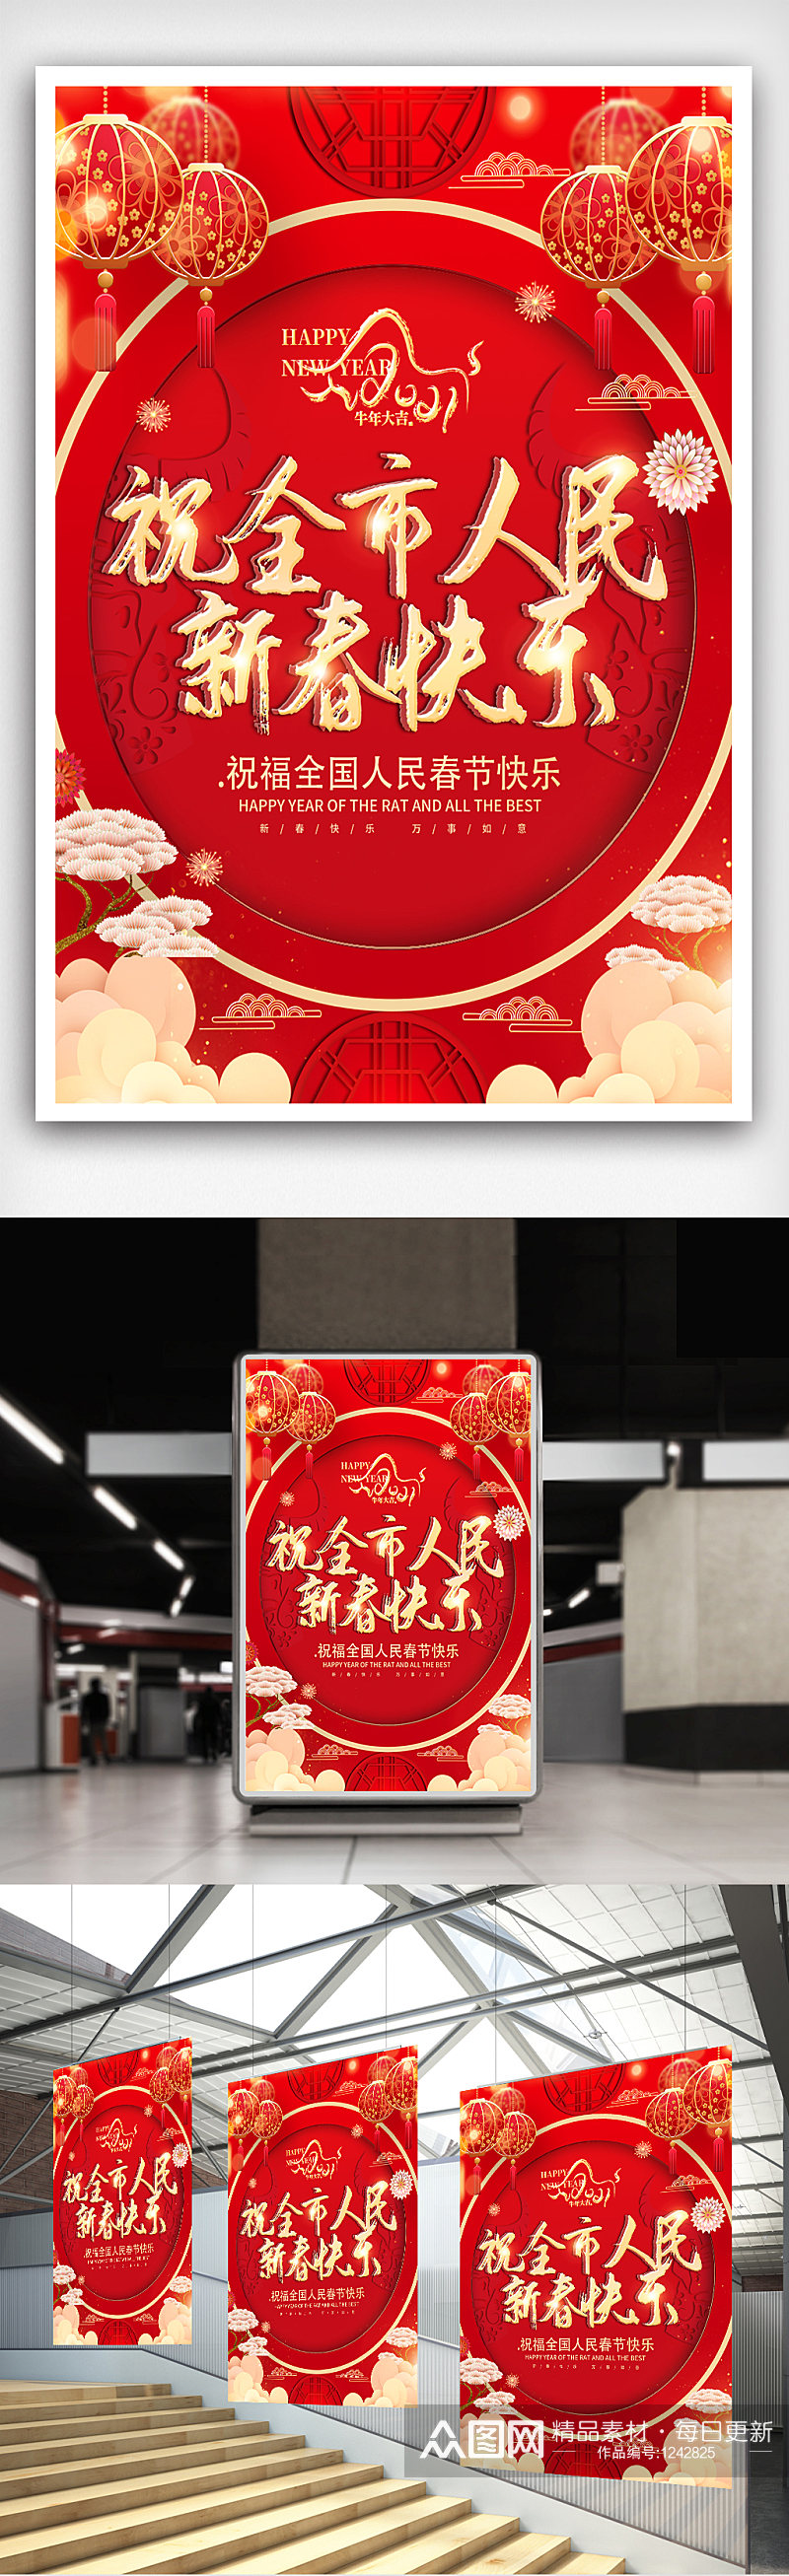 红色喜庆祝全市人民新春快乐海报素材